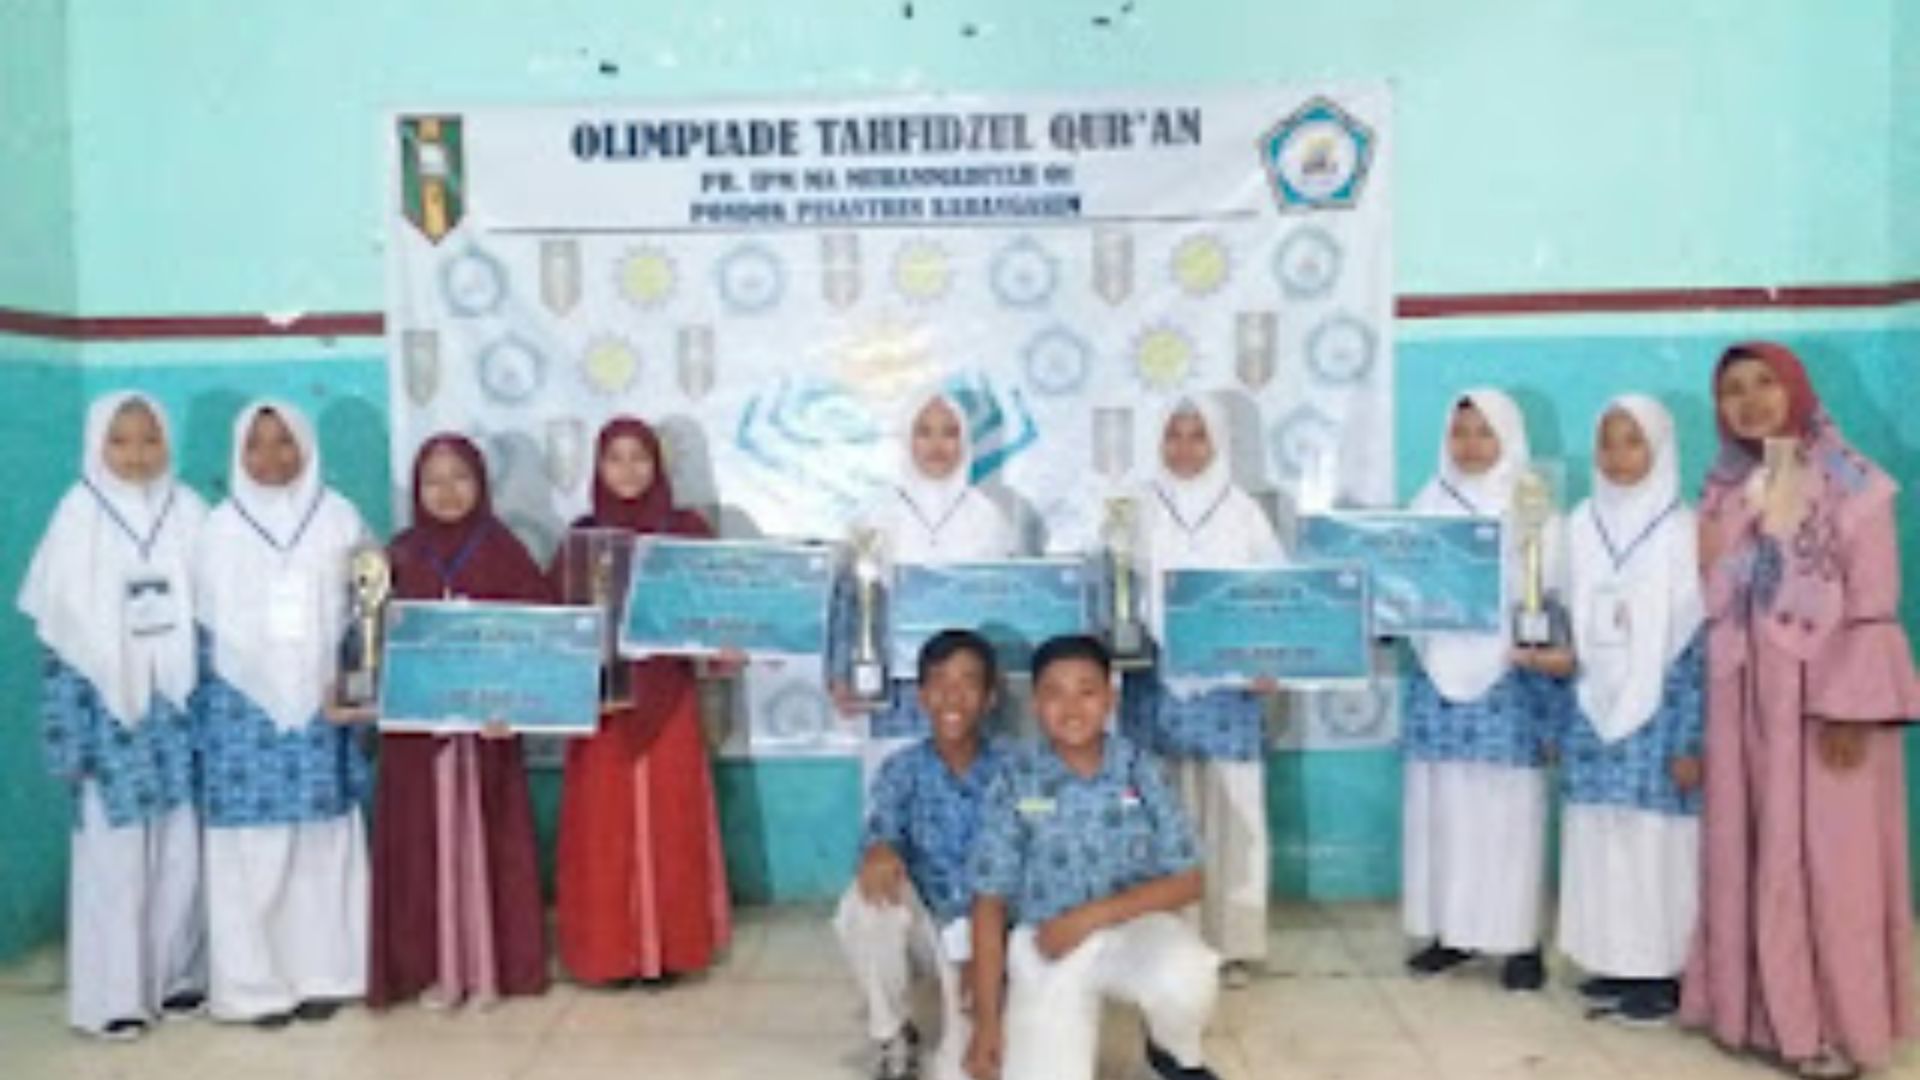 Prestasi Siswa SMPM Jipat di Olimpiade Tahfidzul Qur’an ( OTQ) Jilid 3 Tingkat SMP/MTs Se-Jatim